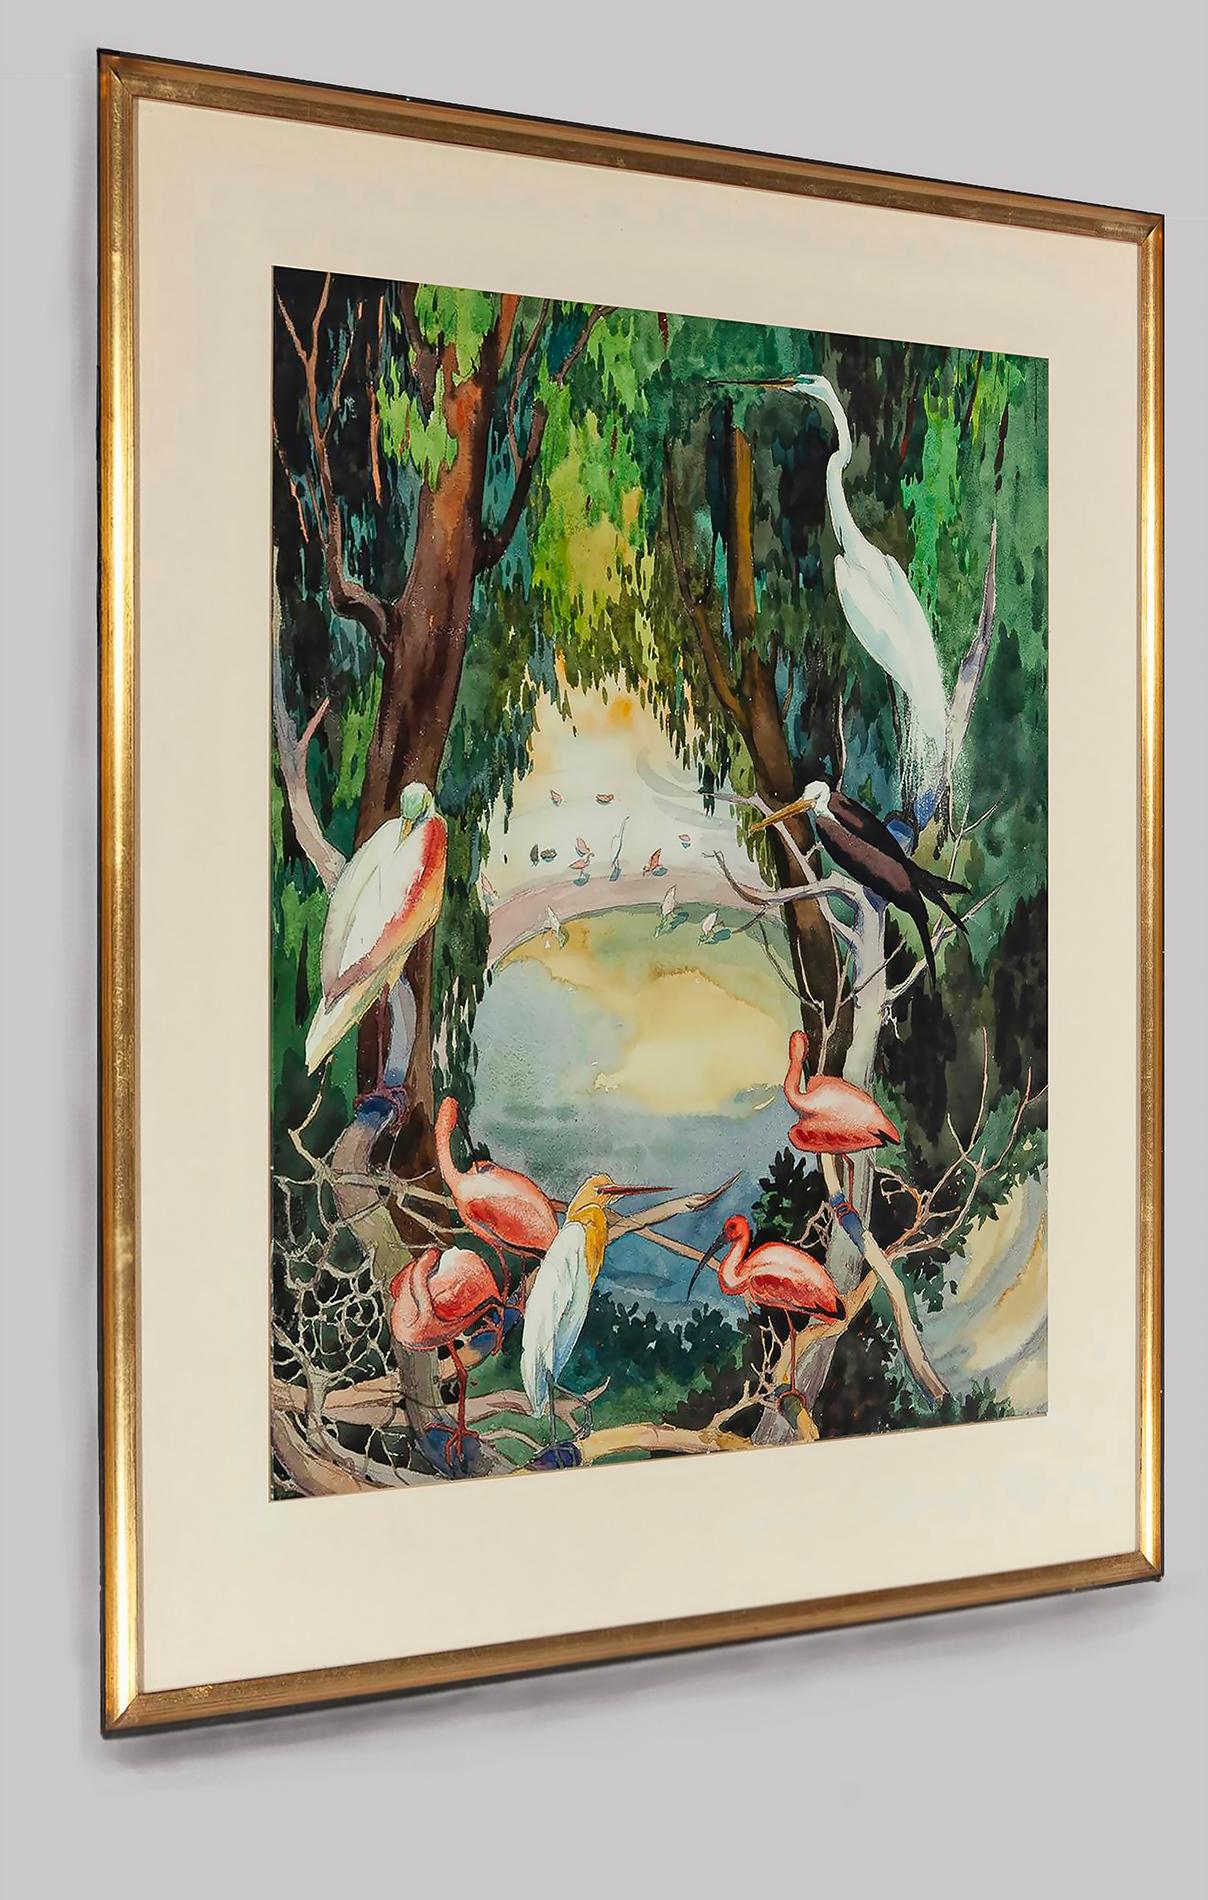 Die ikonischen Motive aus Botkes Oeuvre zeigen häufig Vögel, insbesondere weiße Pfauen, Gänse, Reiher und Kakadus.
Künstlerinnen haben Konjunktur und sind heute sehr gefragt. Das Werk befindet sich in gutem Zustand und ist rechts unten signiert. Das